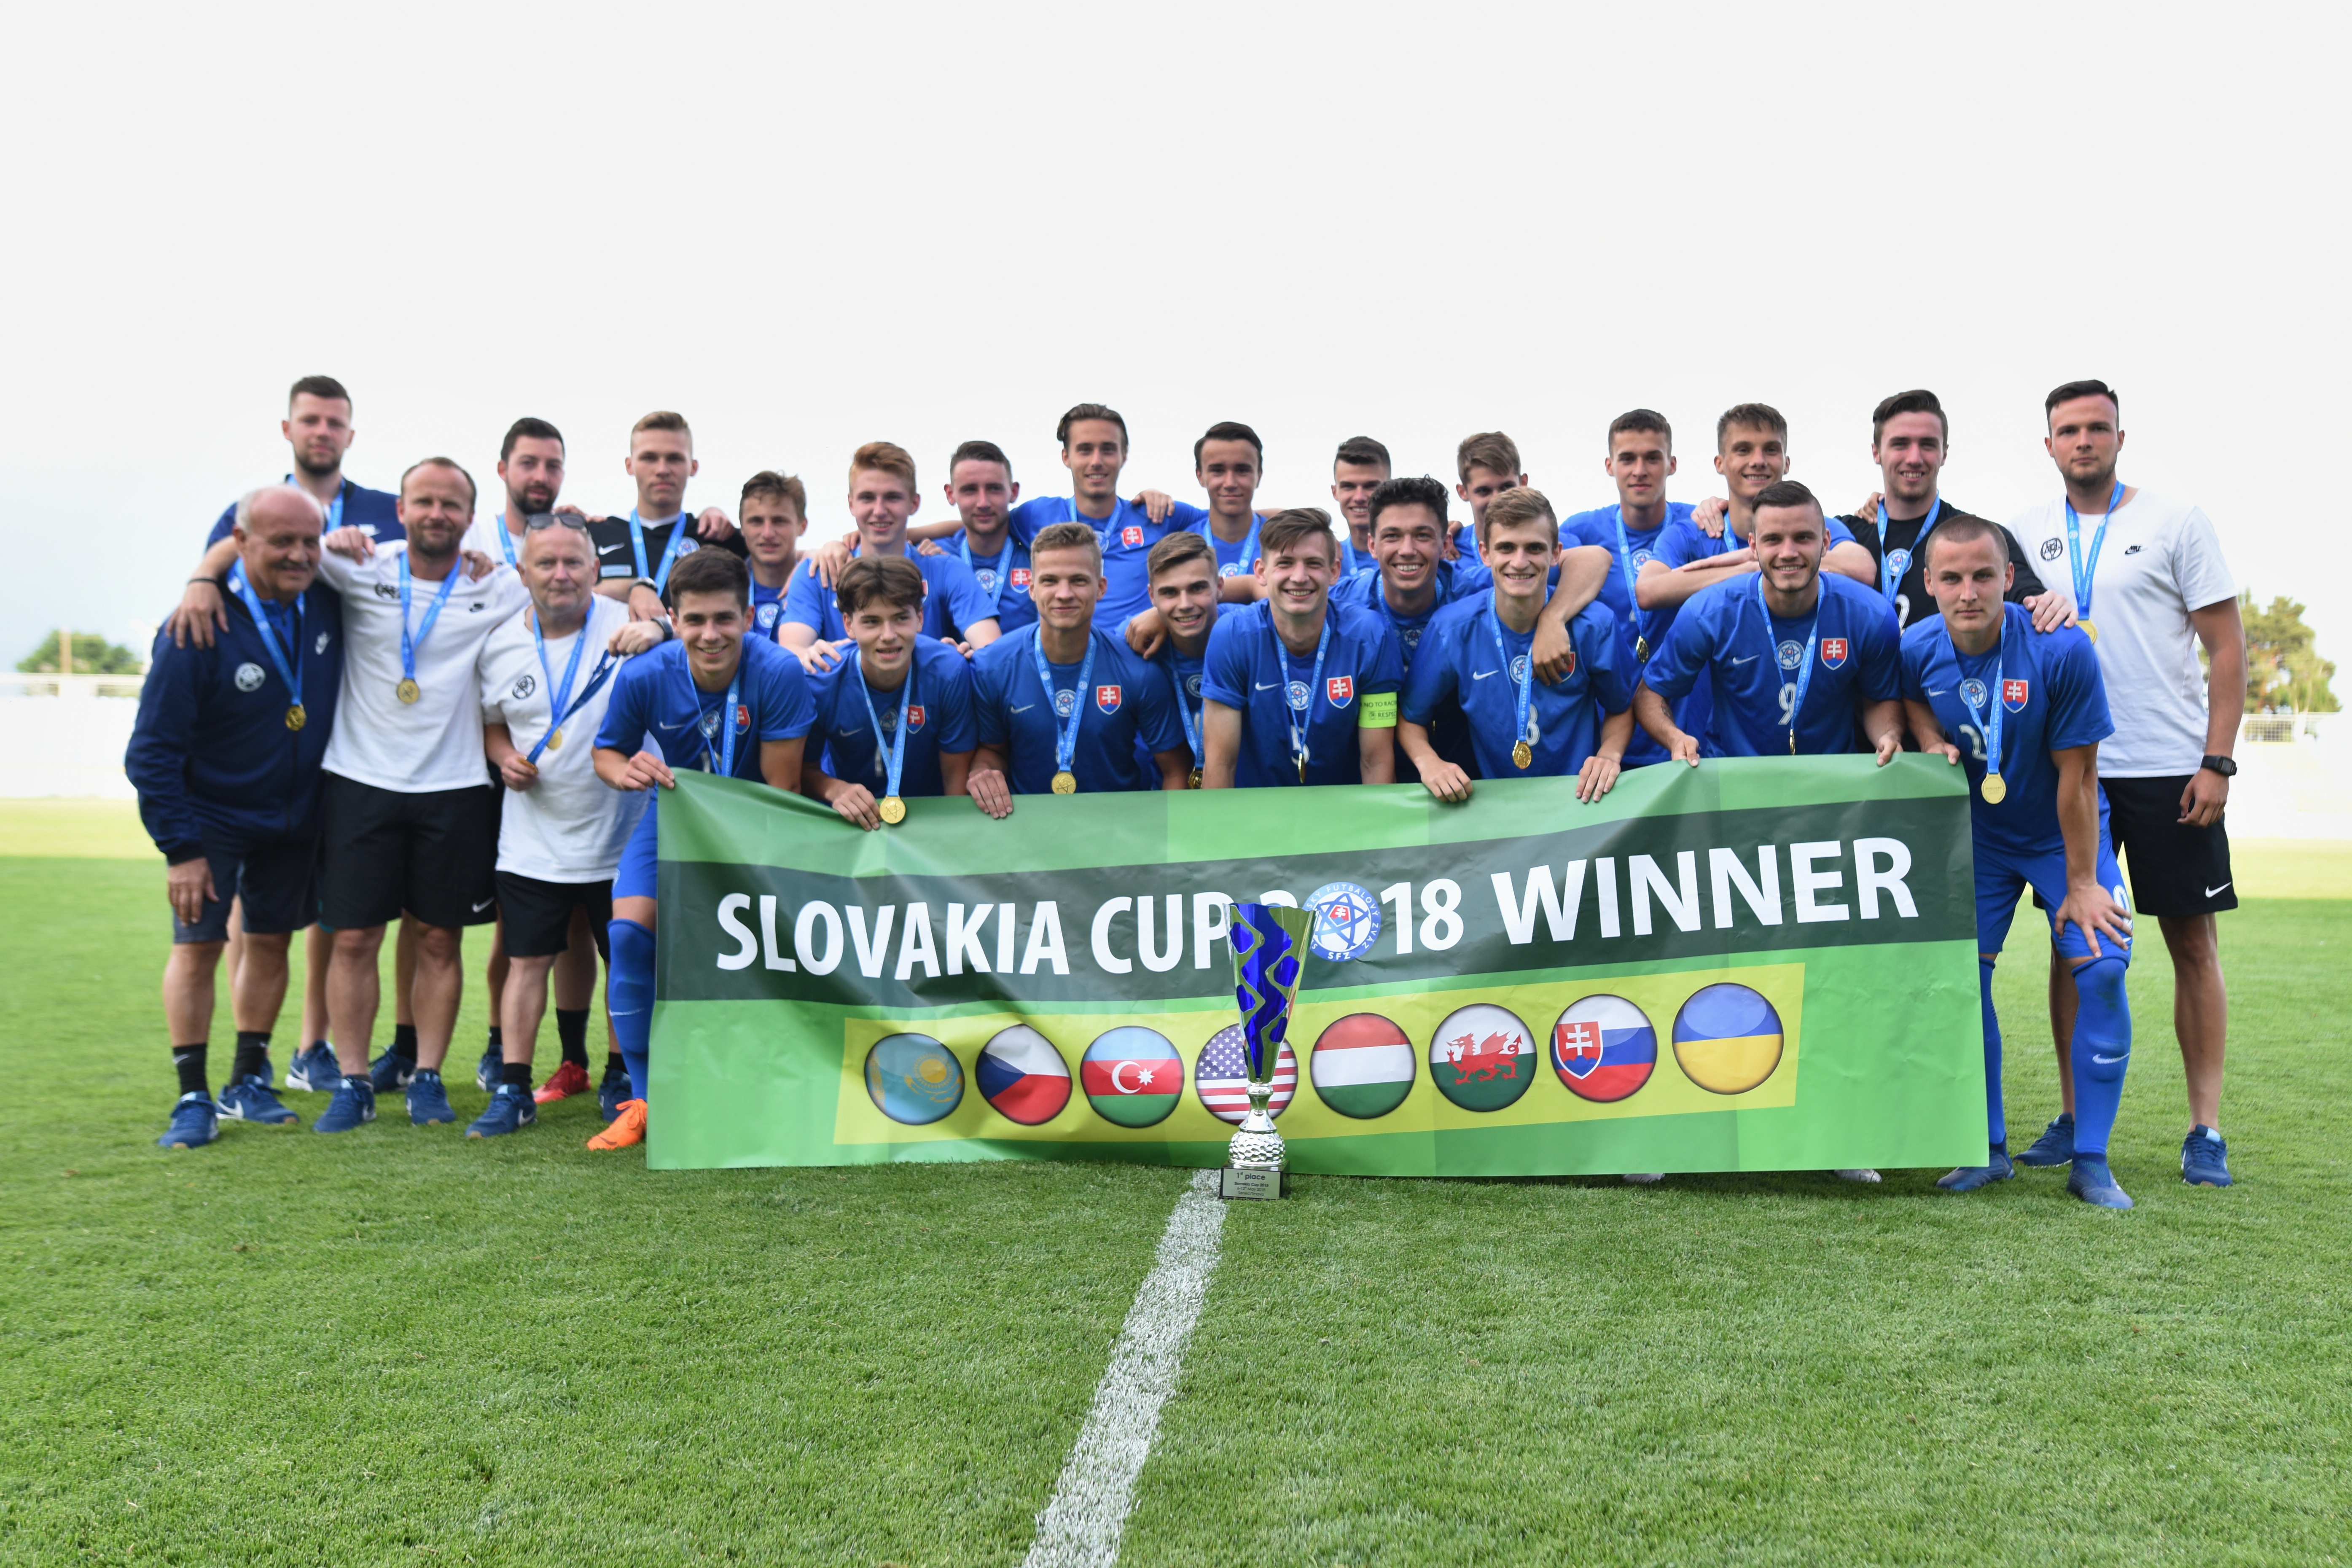 Slovakia Cup: Mladí Slováci vo finále zdolali Česko a tešia sa z trofeje